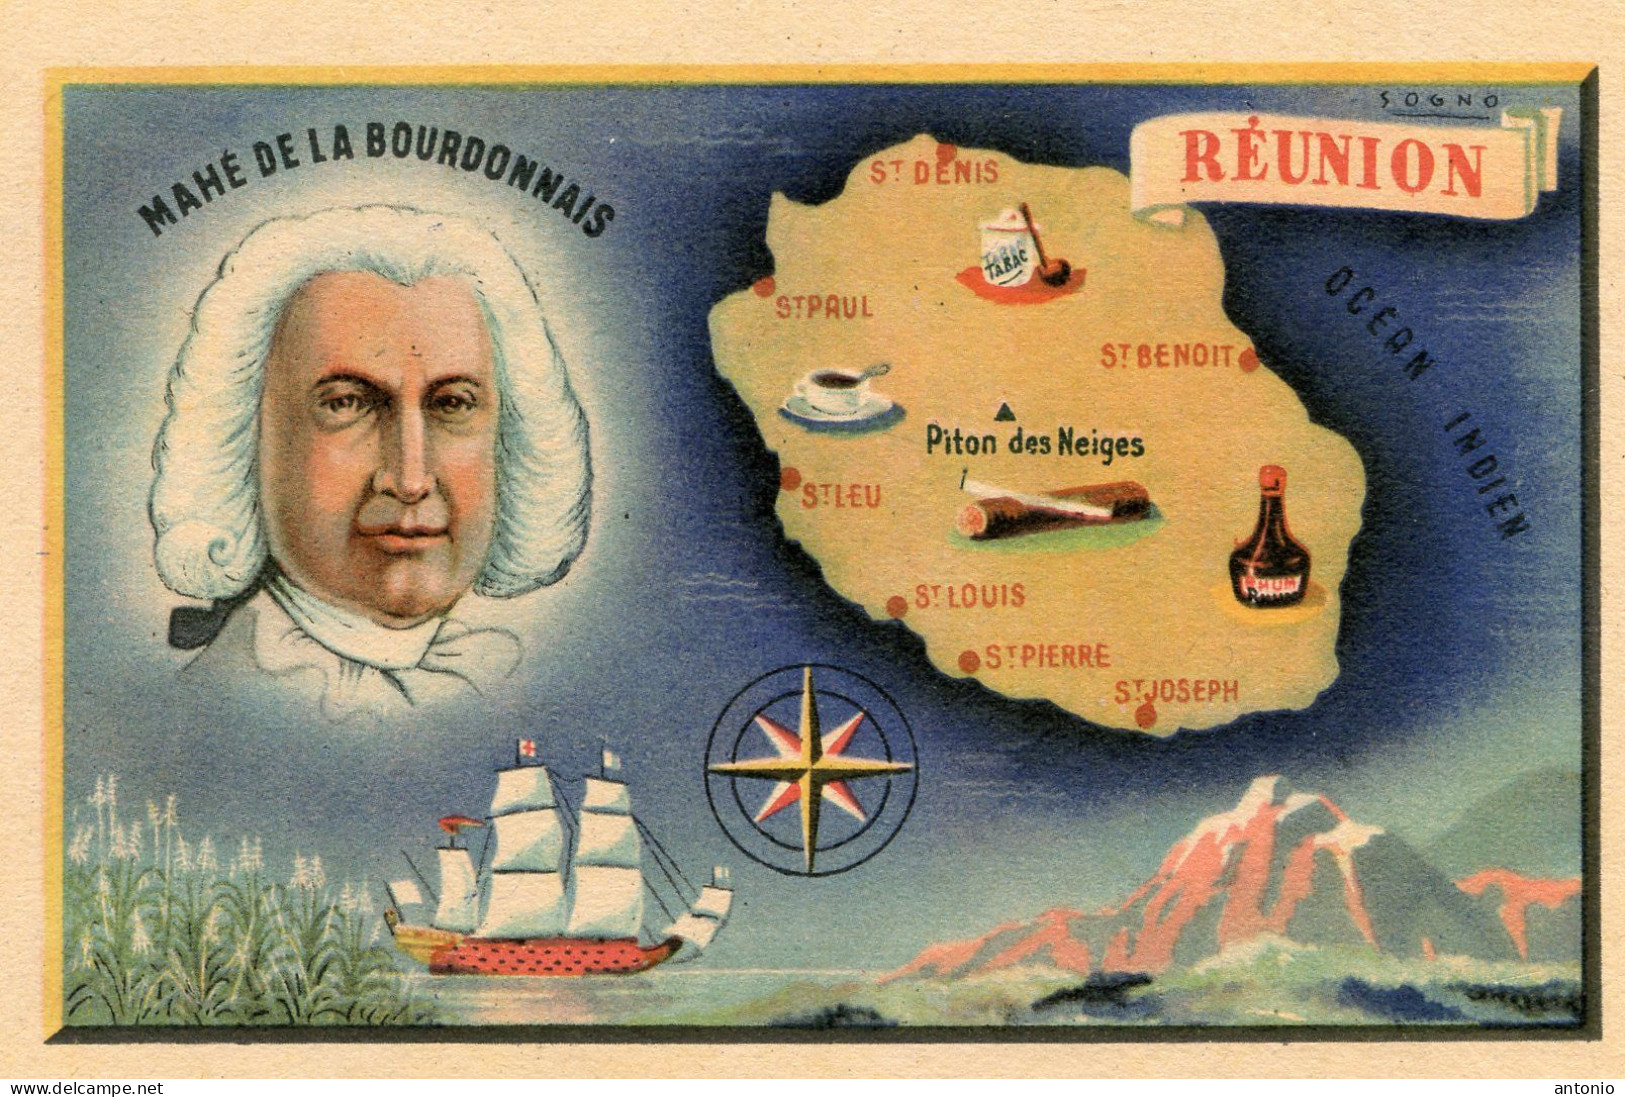 Réunion .Carte Géographique. Mahé De La Bourdonnais - Riunione